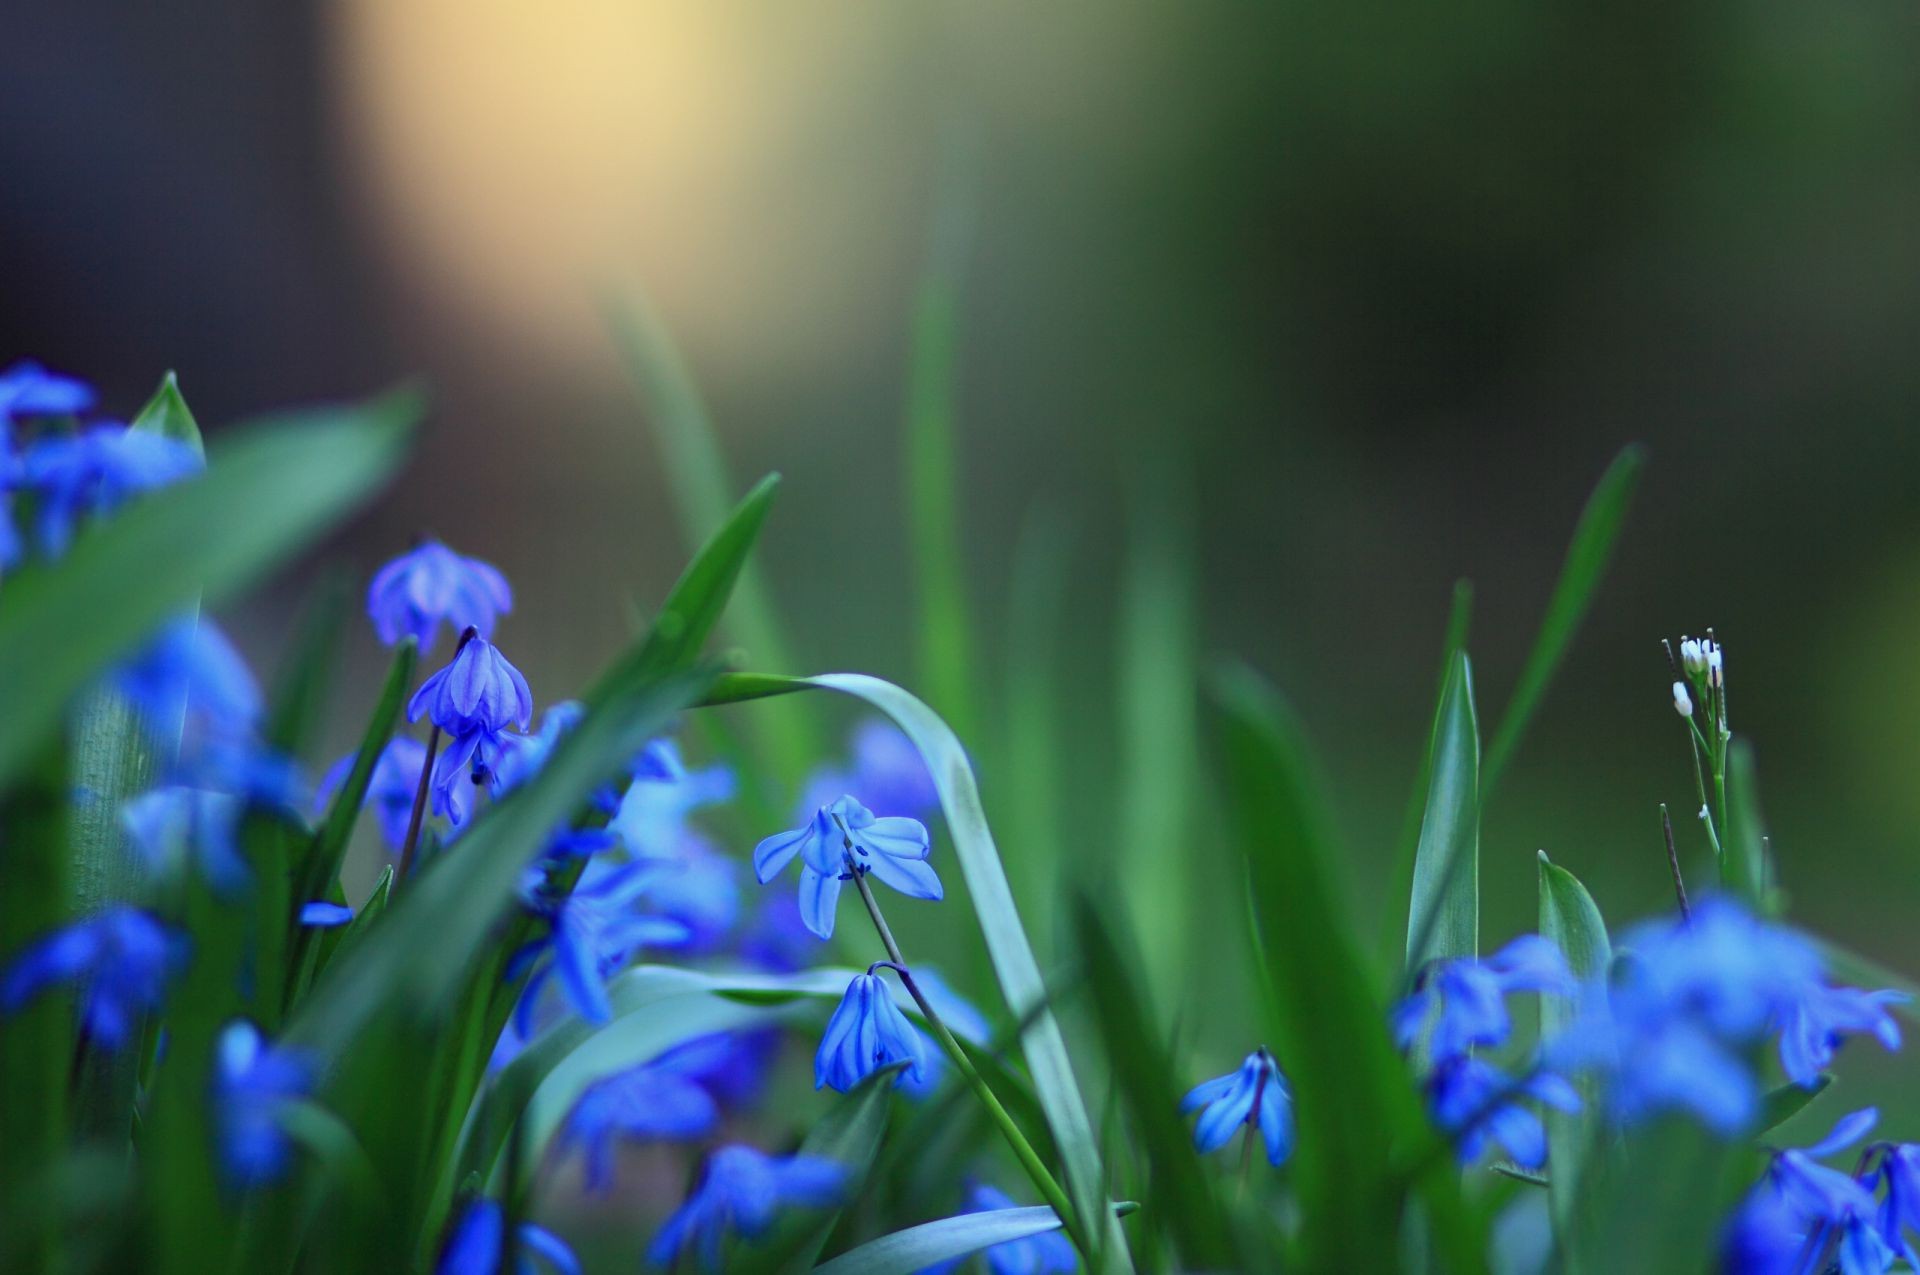 цветы природа цветок лист флора размытость рост пасха трава сад на открытом воздухе лето сезон яркий хорошую погоду лампы цветочные весна парк лепесток